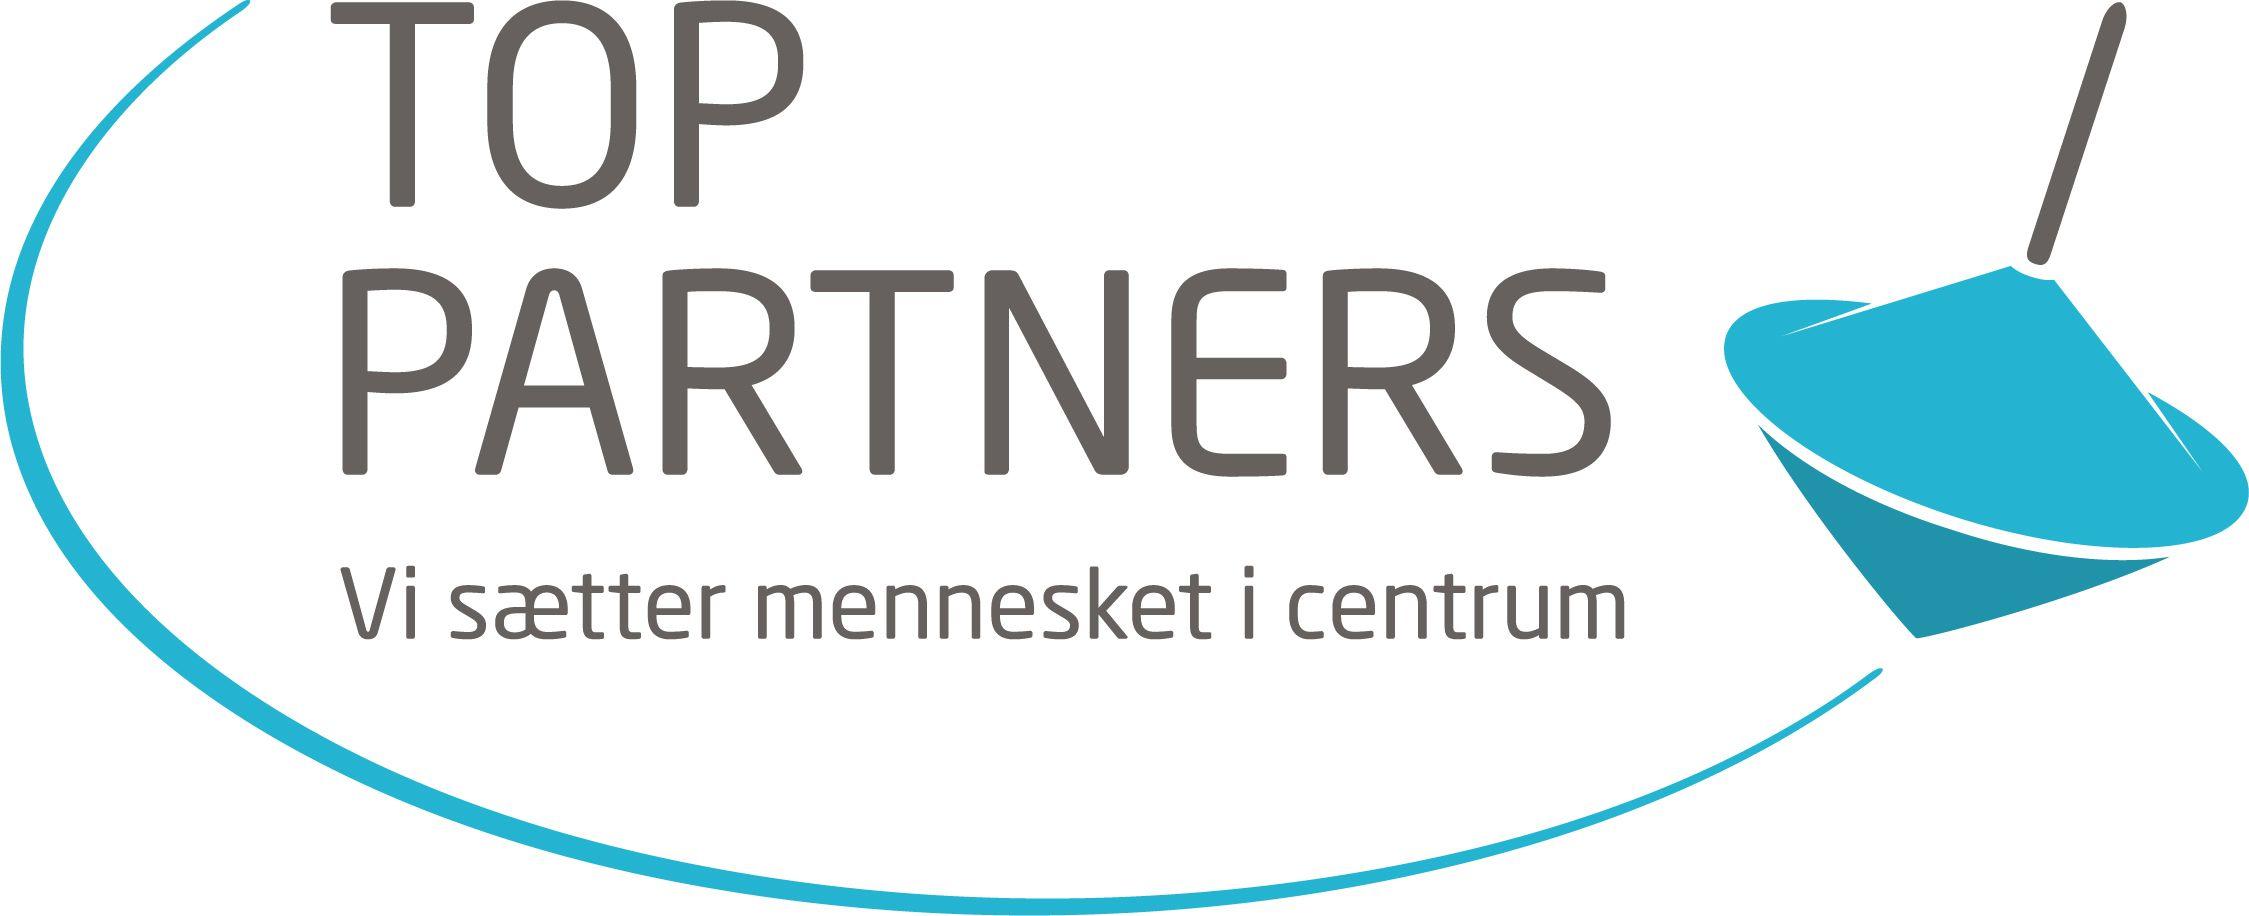 Top Partners 